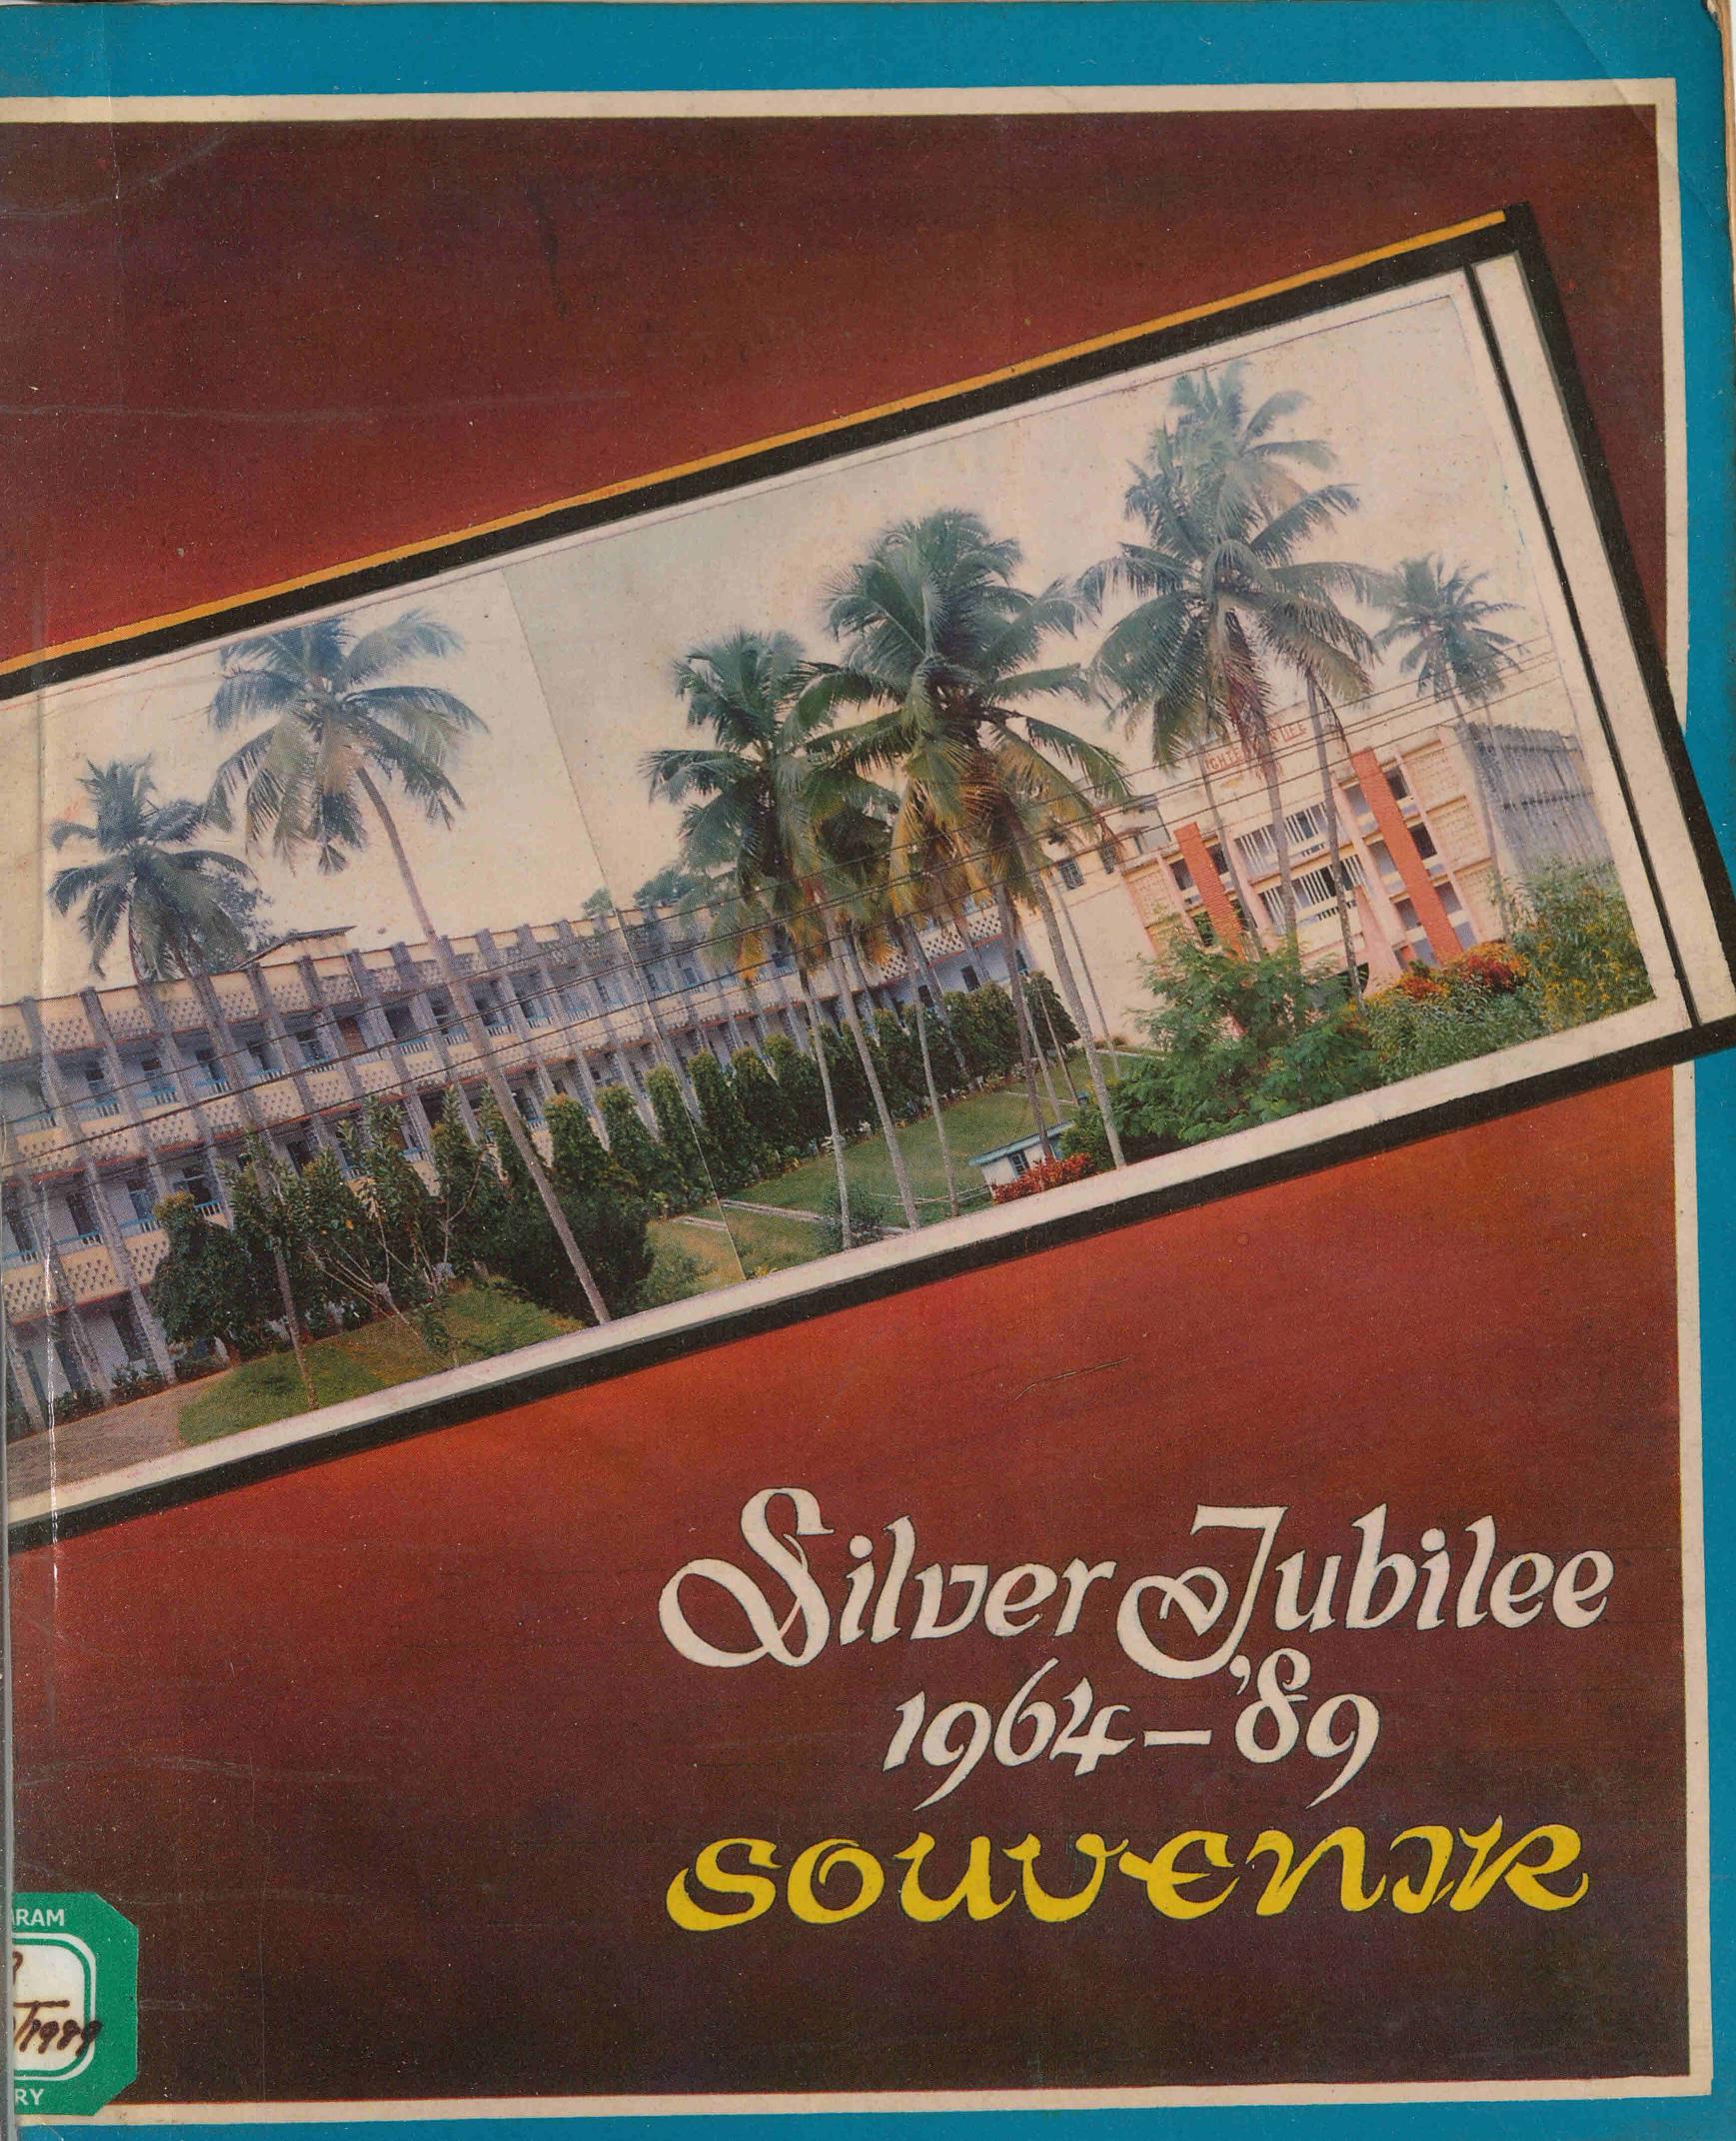 1989 - സിൽവർ ജുബിലി സോവനീർ - അൽ ഫോൻസാ കോളേജ്